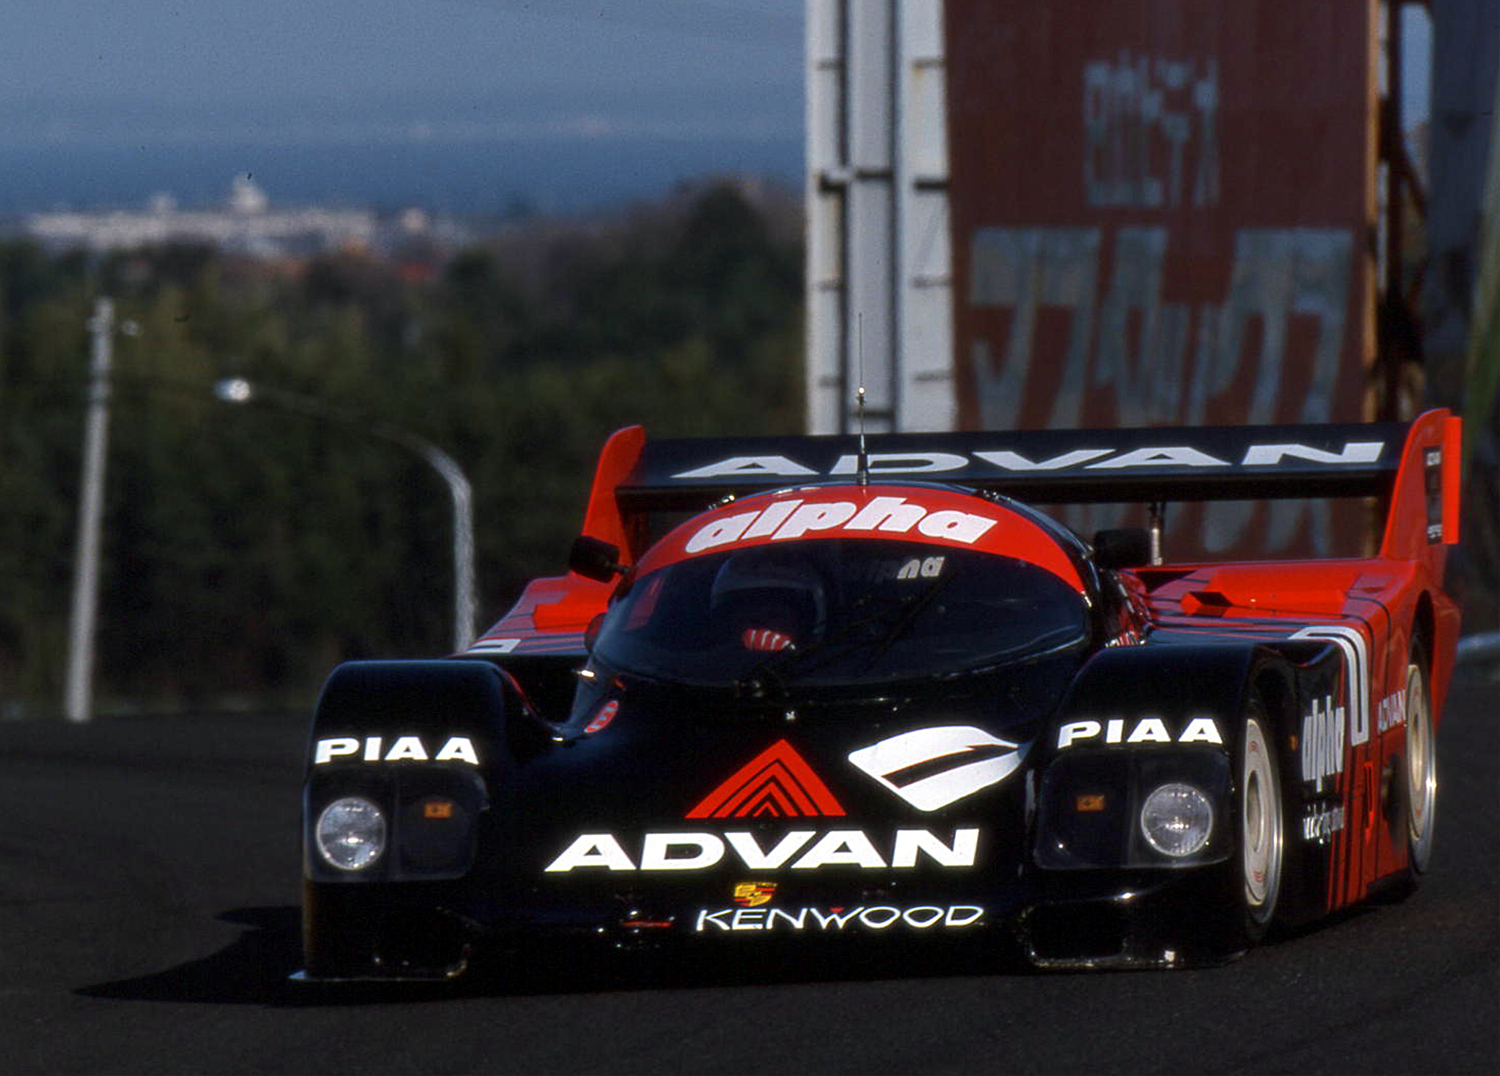 その速さとカラーリングに憧れた印象深い「ADVAN」カラーのレースマシン 〜 画像12